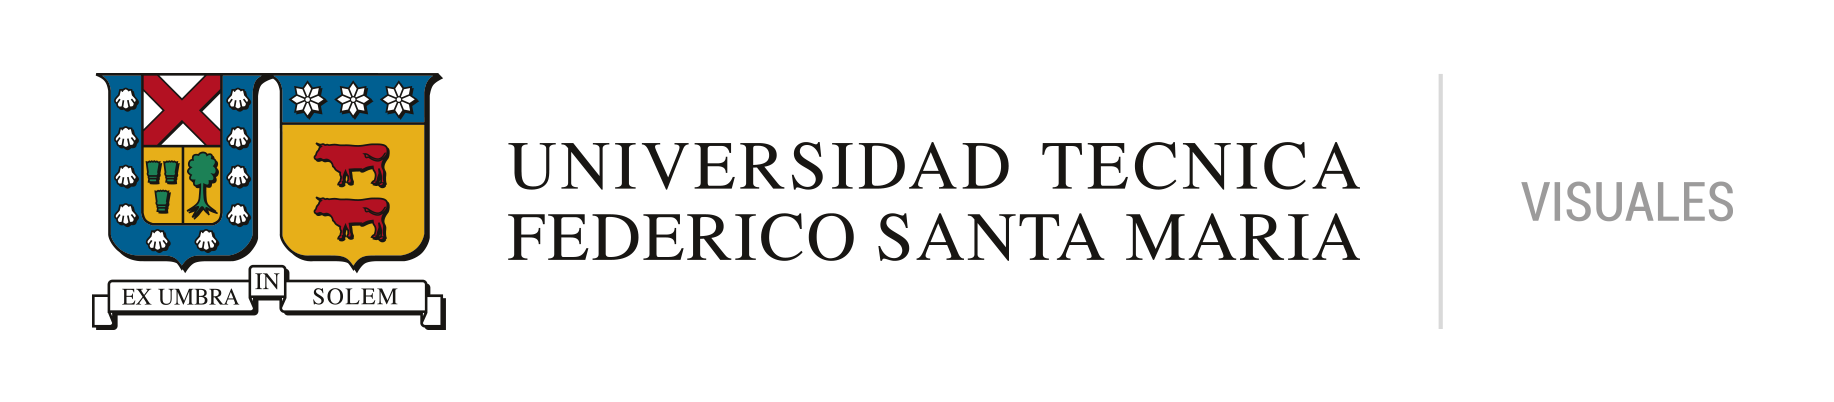 USM Visuales - Universidad Técnica Federico Santa María